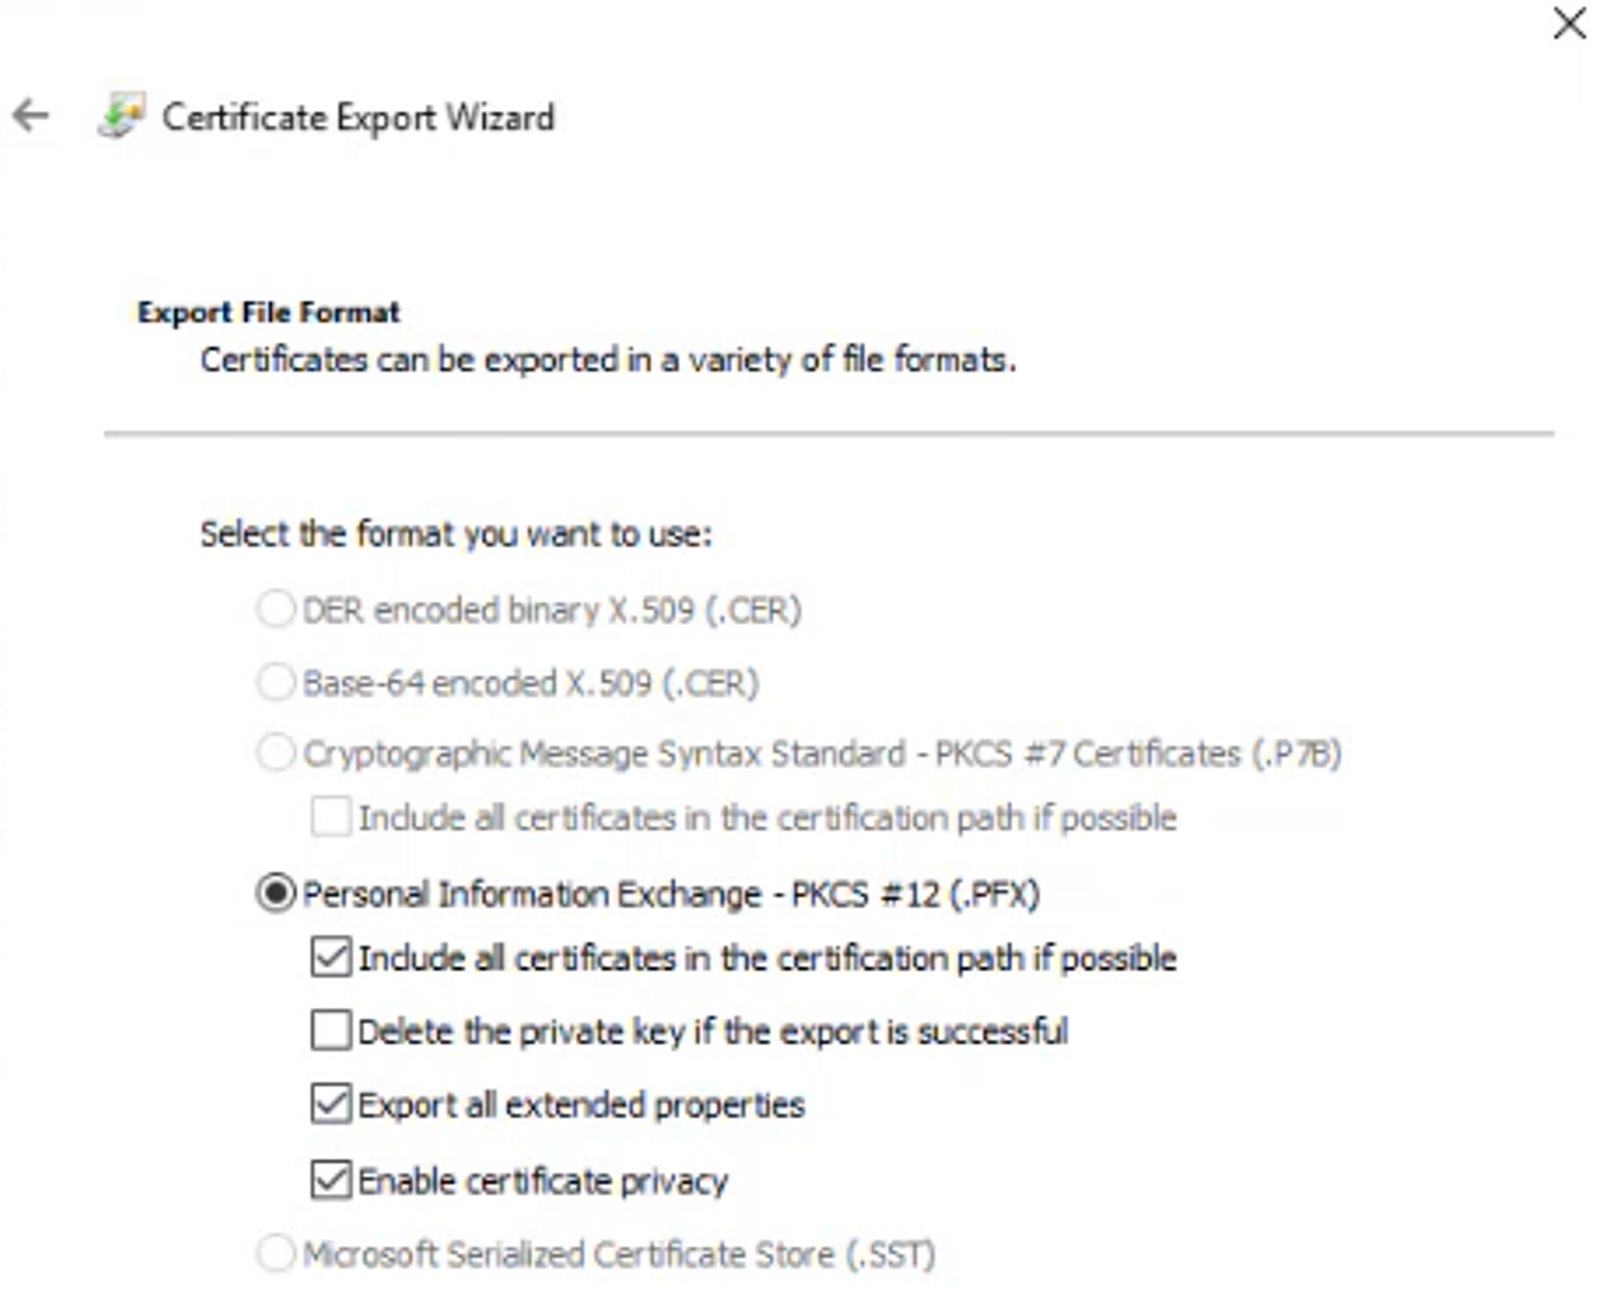 AAD_-_Certificate_requirements_export_wizard_2.png